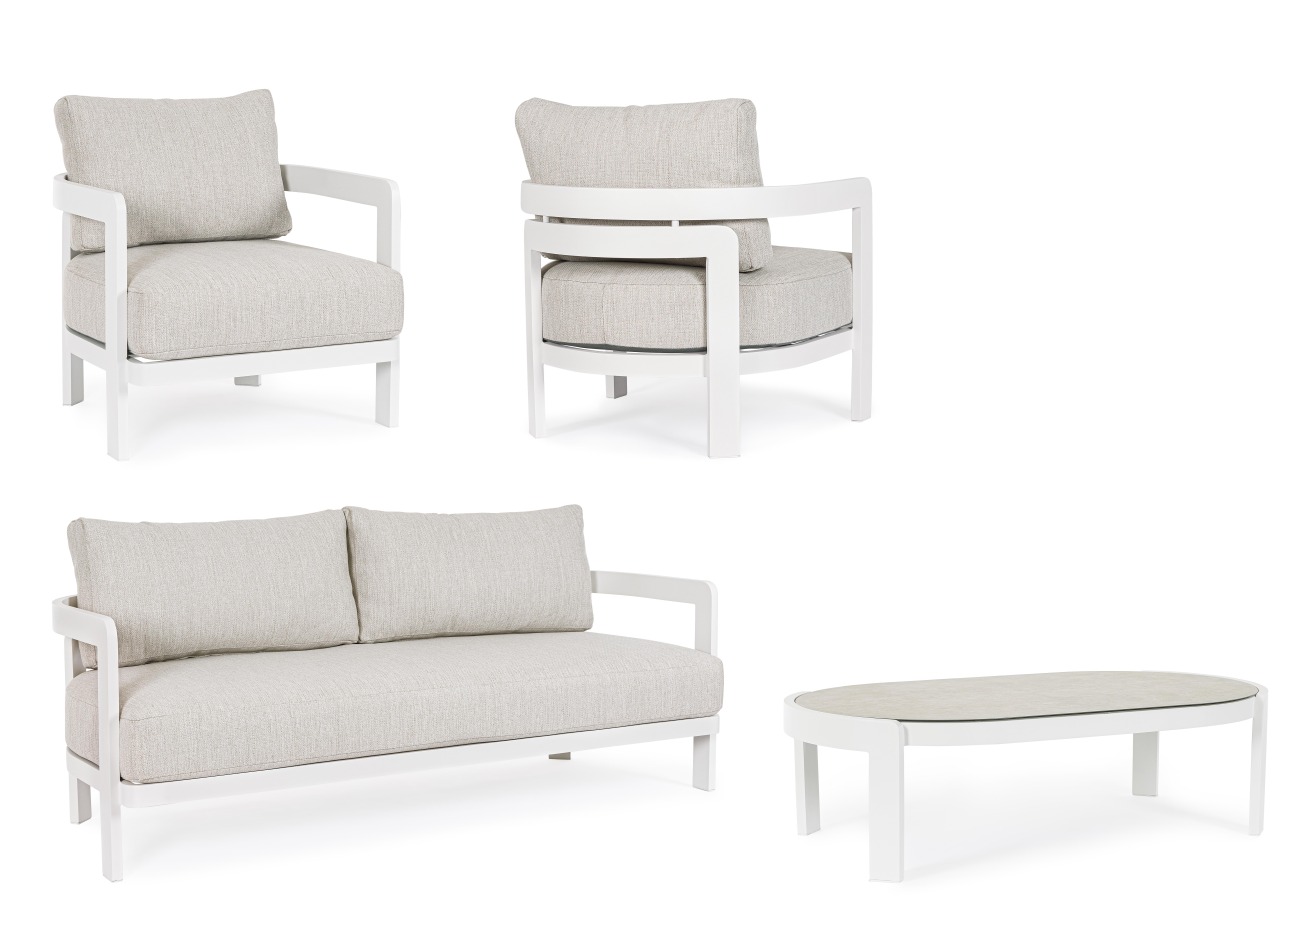 Das Garten-Set Presly überzeugt mit seinem modernen Design. Gefertigt wurde es aus Aluminium, welches einen weißen Farbton besitzt. Das Gestell ist auch aus Aluminium. Das Set besteht aus einem Sofa, zwei Sesseln und einem Couchtisch..